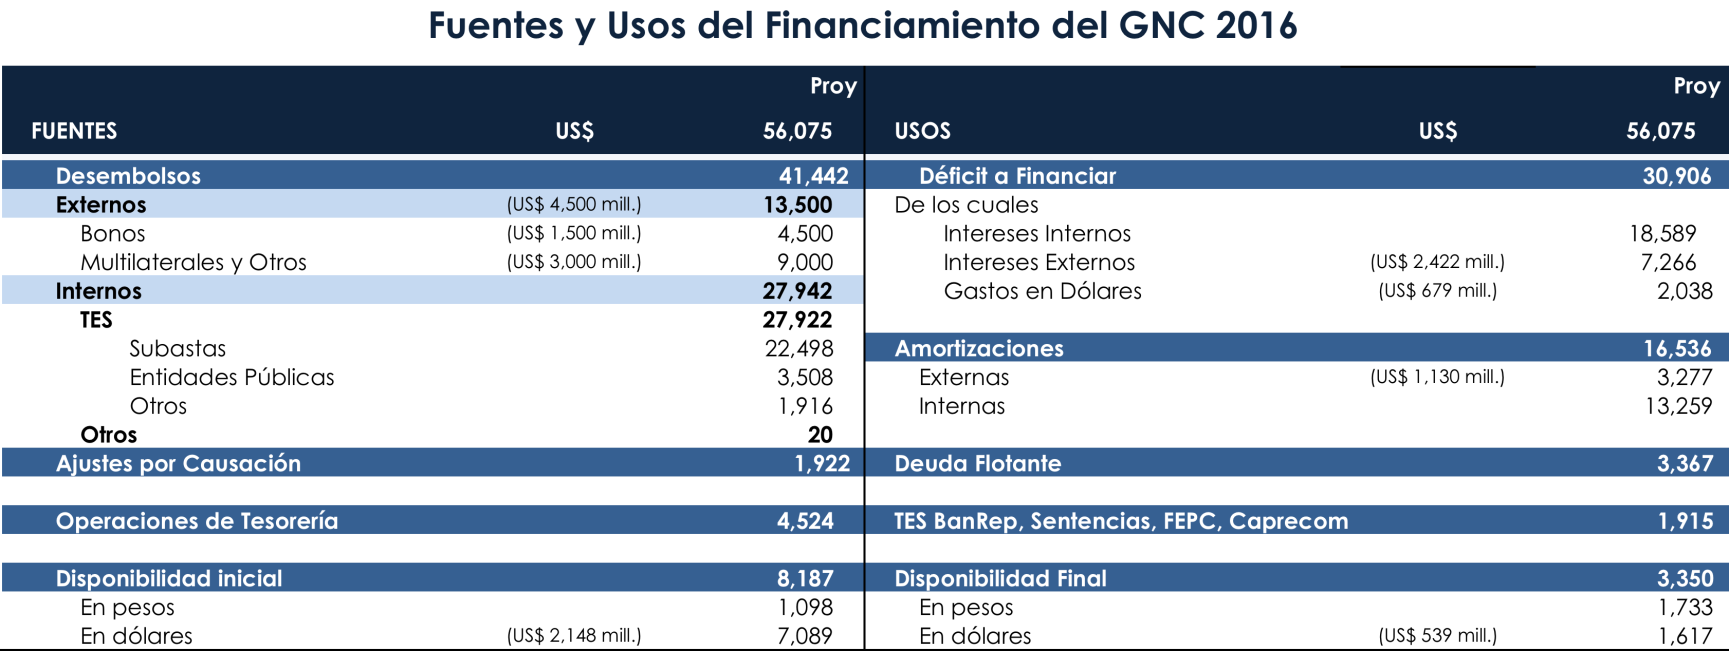 Fuentes y Usos del Financiamiento del GNC 2016 CAMBIOS FRENTE AL MARCO FISCAL DE MEDIANO PLAZO Emisiones Externas: Se disminuyen en USD 1.